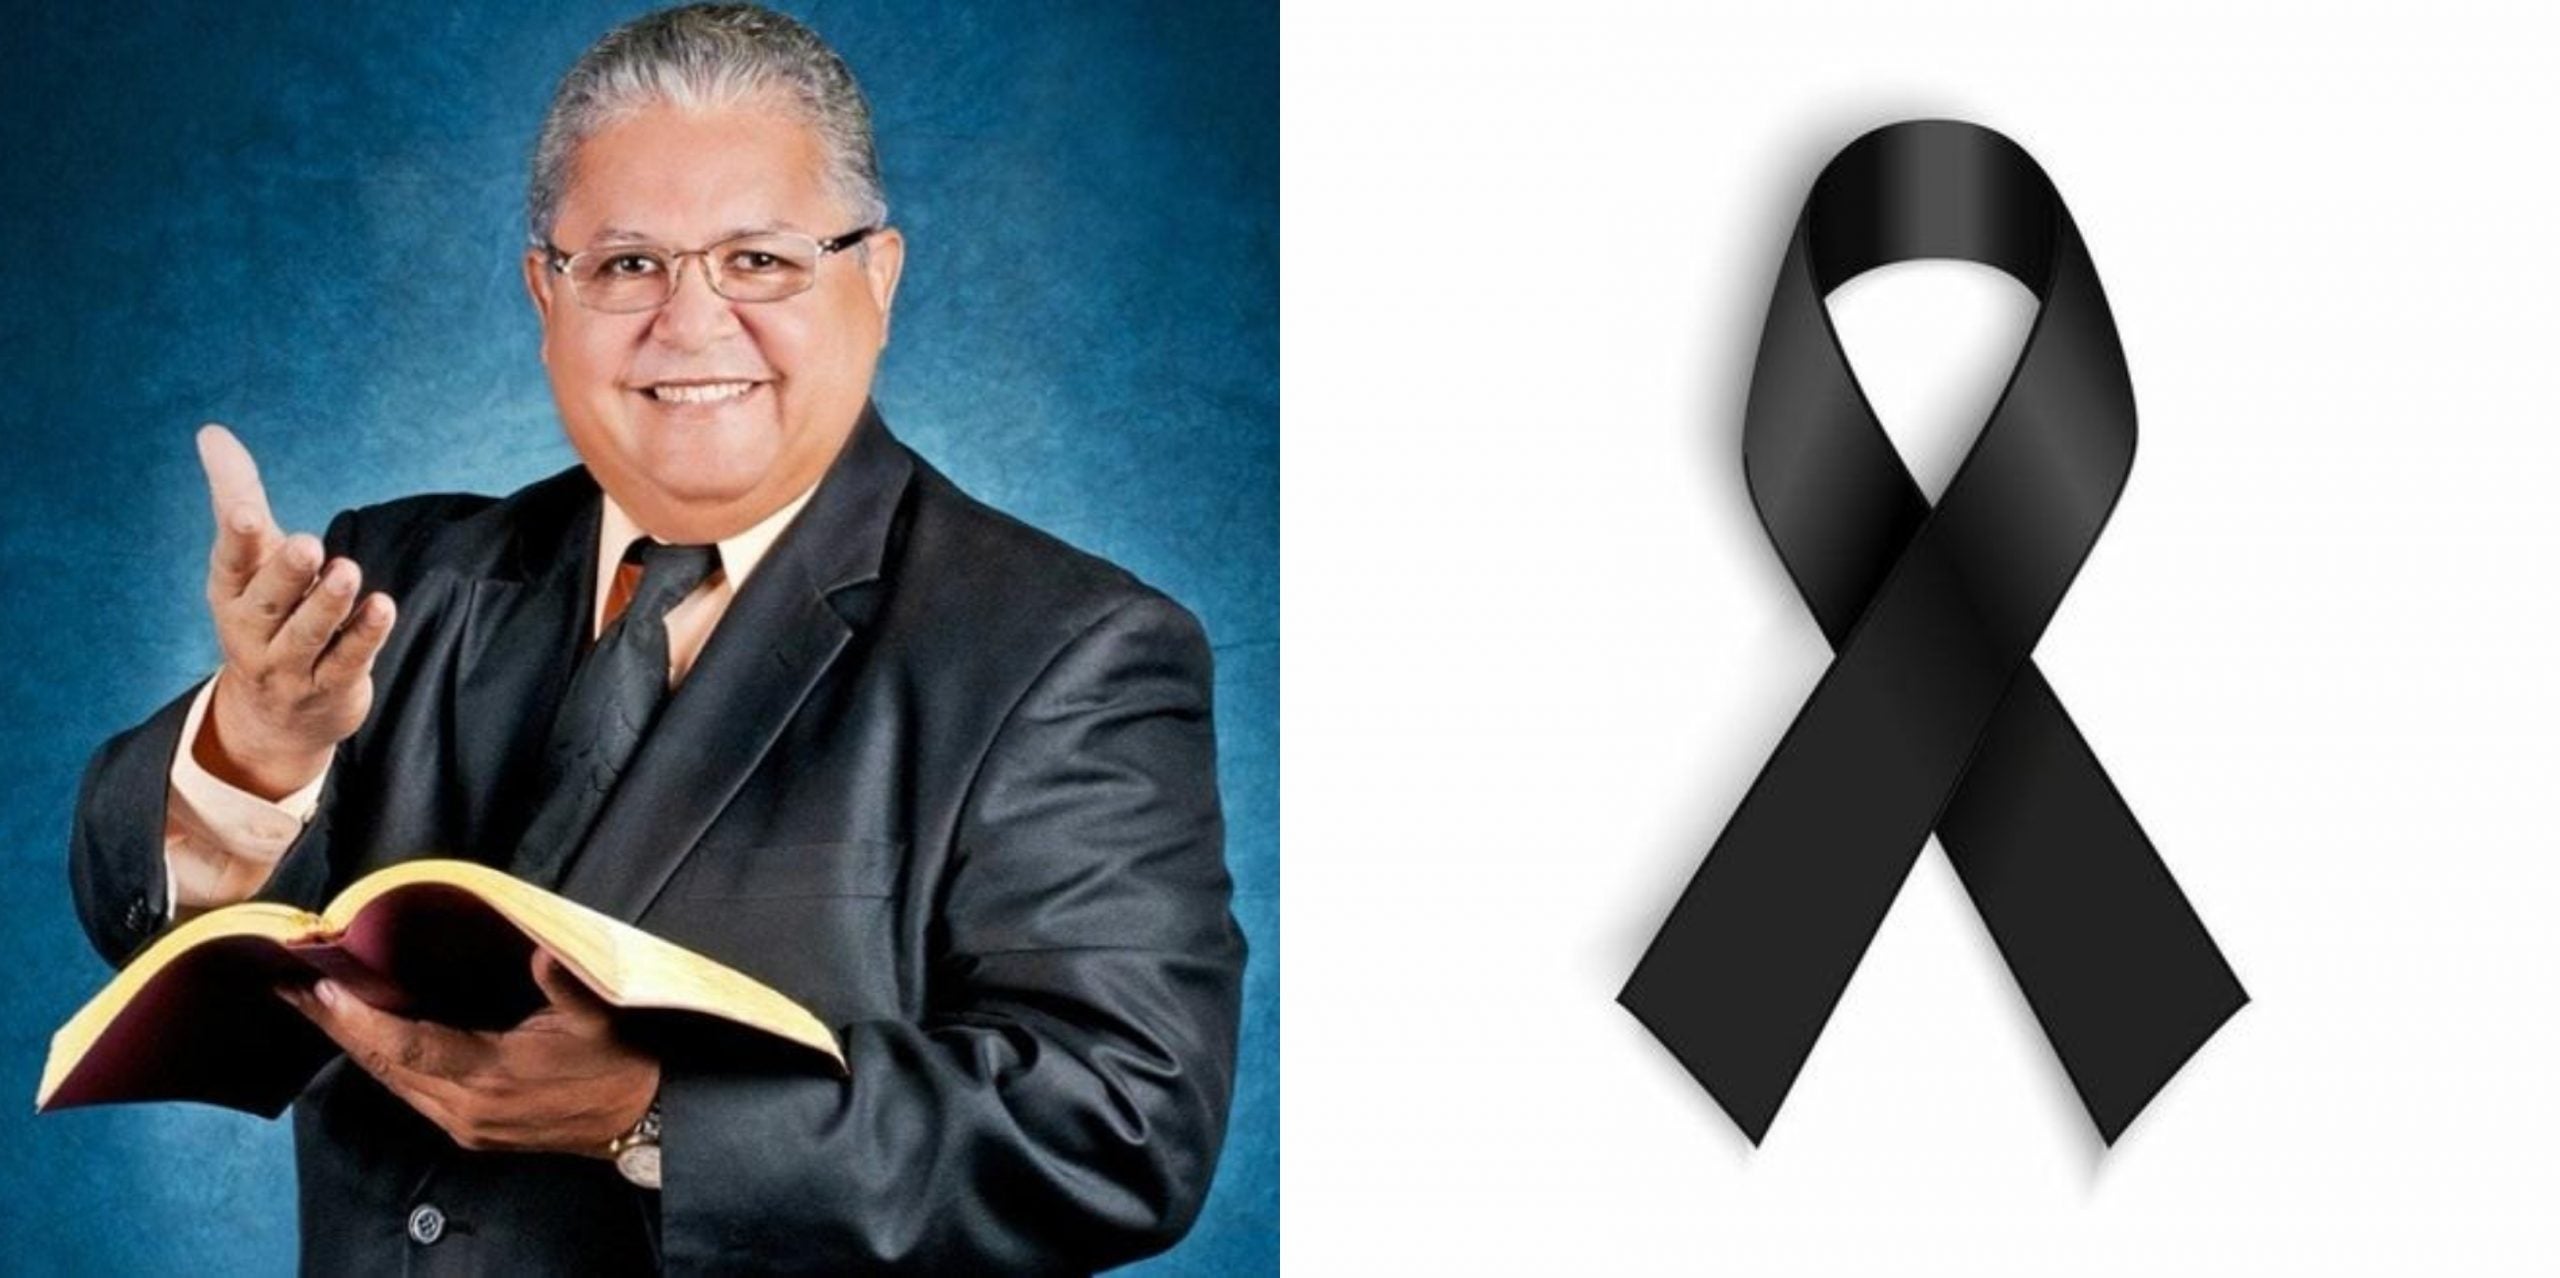 El pastor Mario Tomás Barahona falleció el 4 de septiembre tras una semana hospitalizado. En sus prédicas decía no creer en el COVID-19 y se rehusaba a vacunarse.